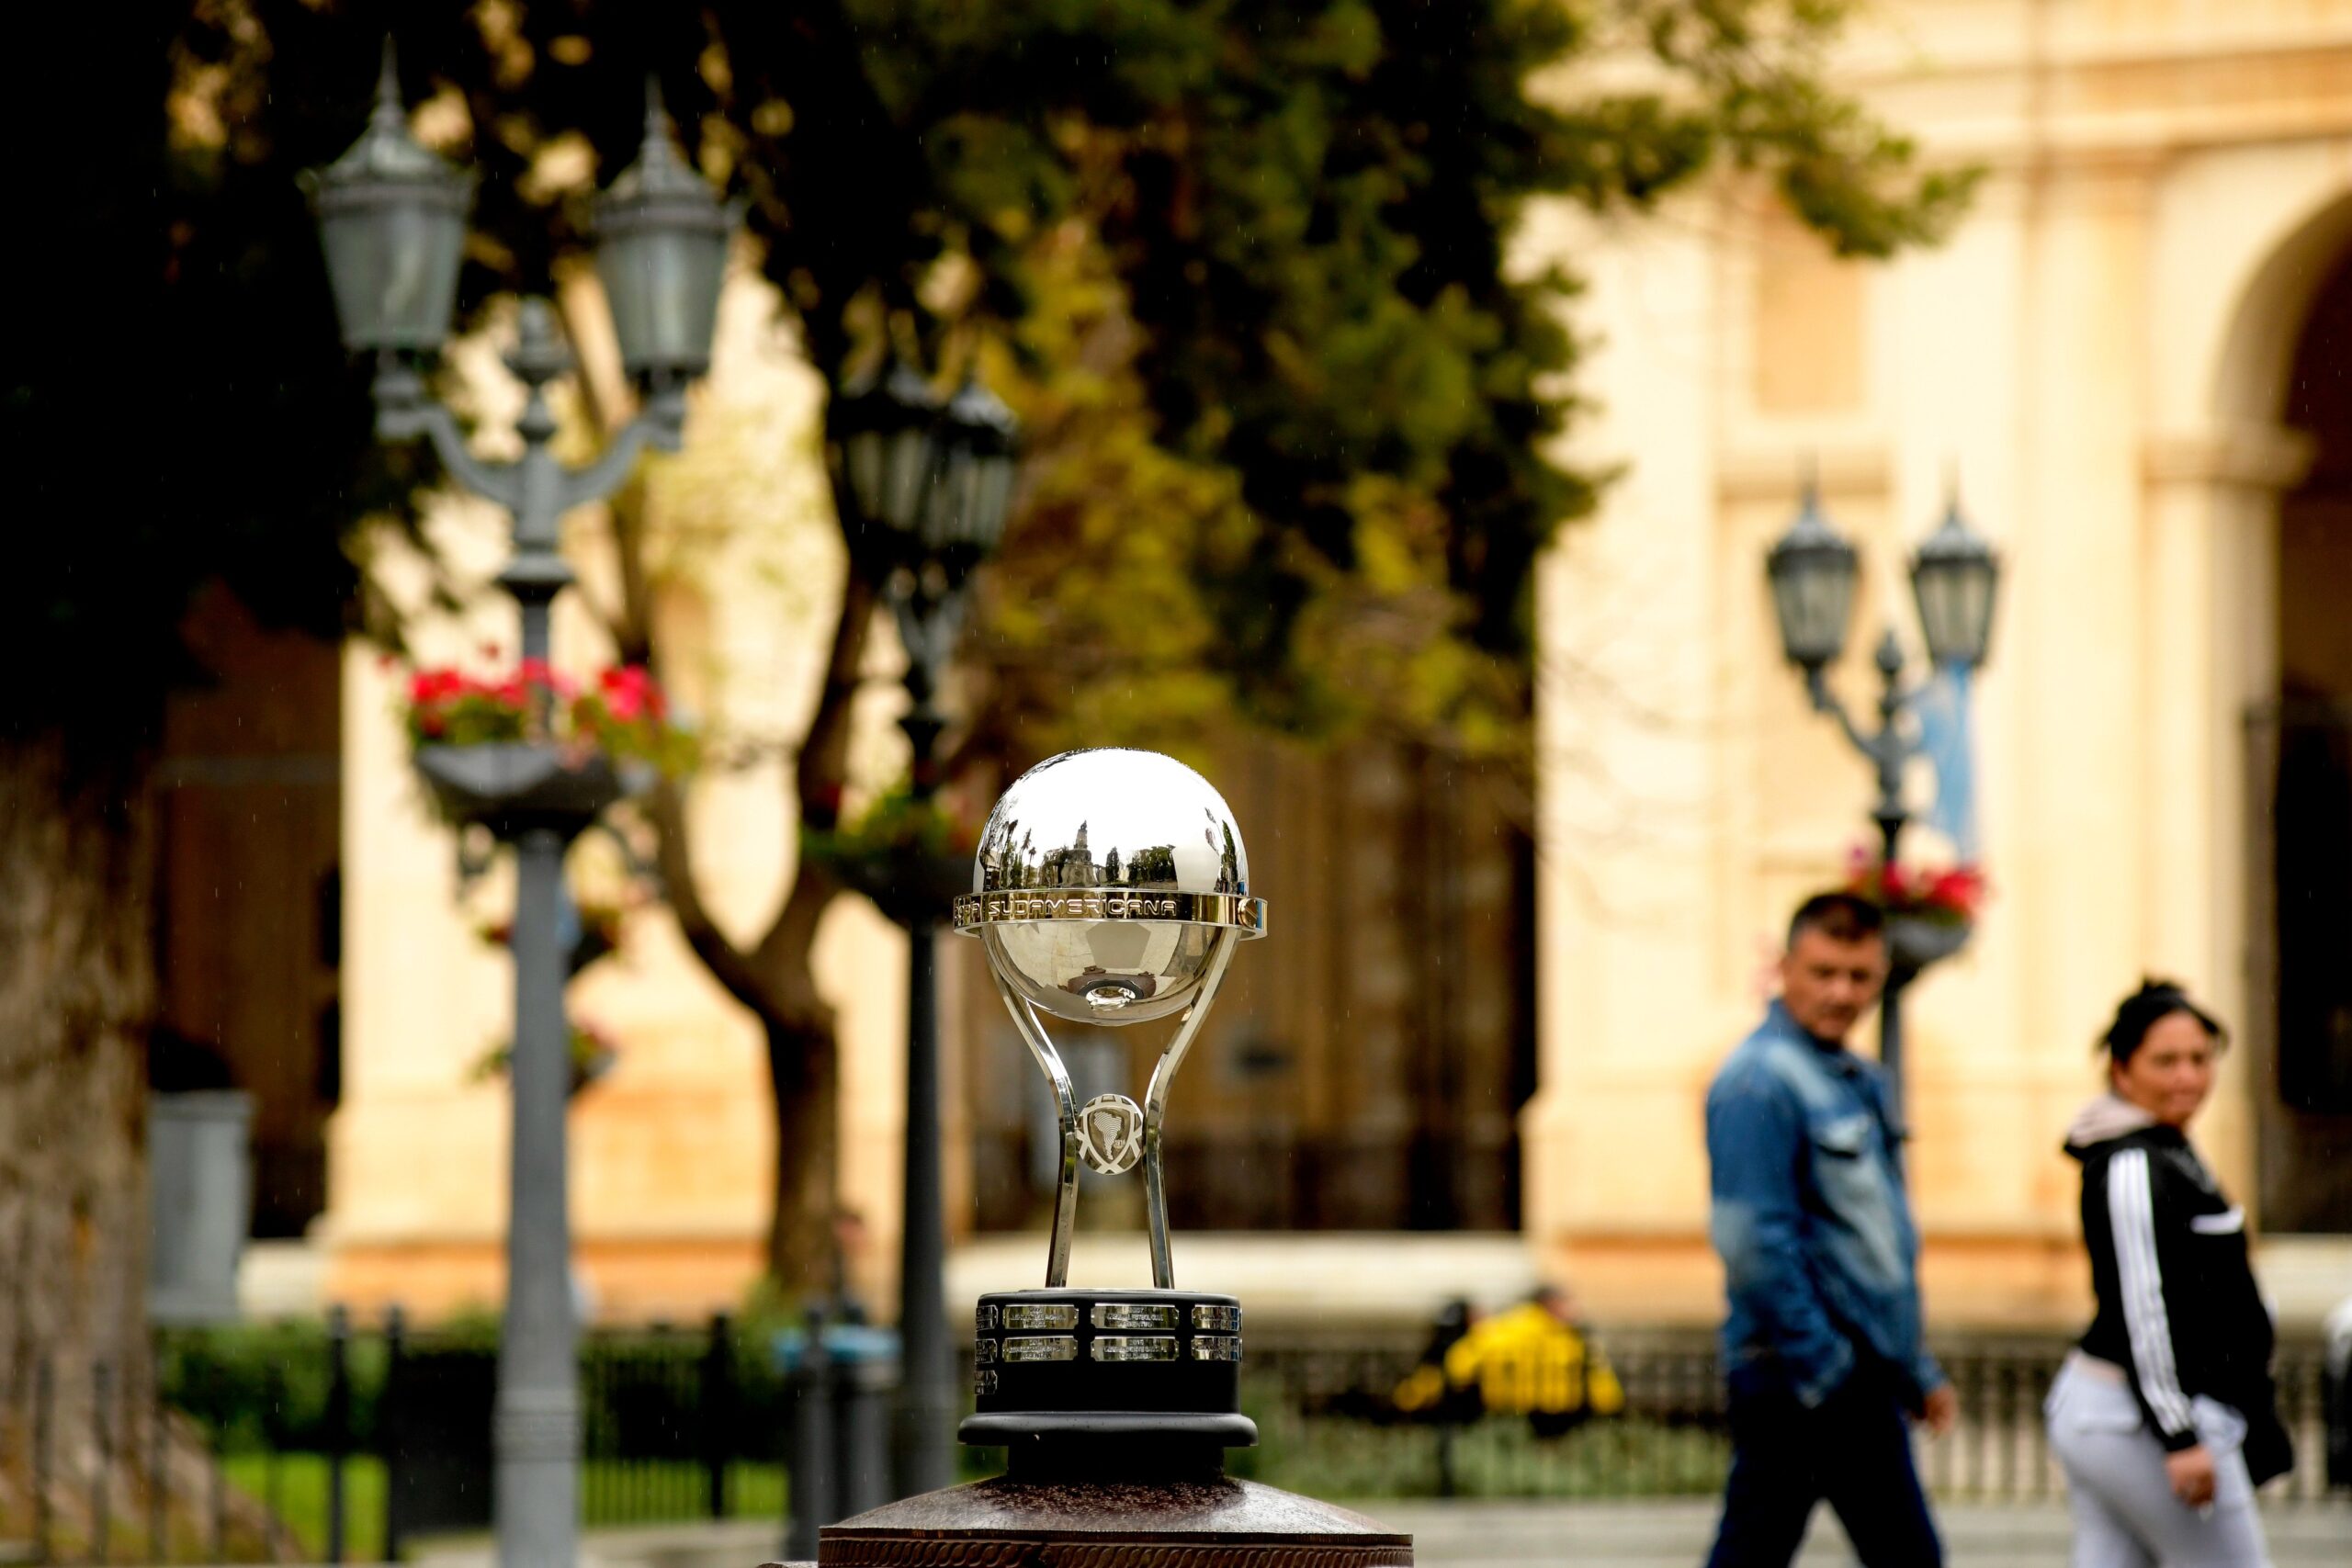 Independiente del Valle y Sao Paulo buscan en Córdoba el bicampeonato de la  Copa Sudamericana